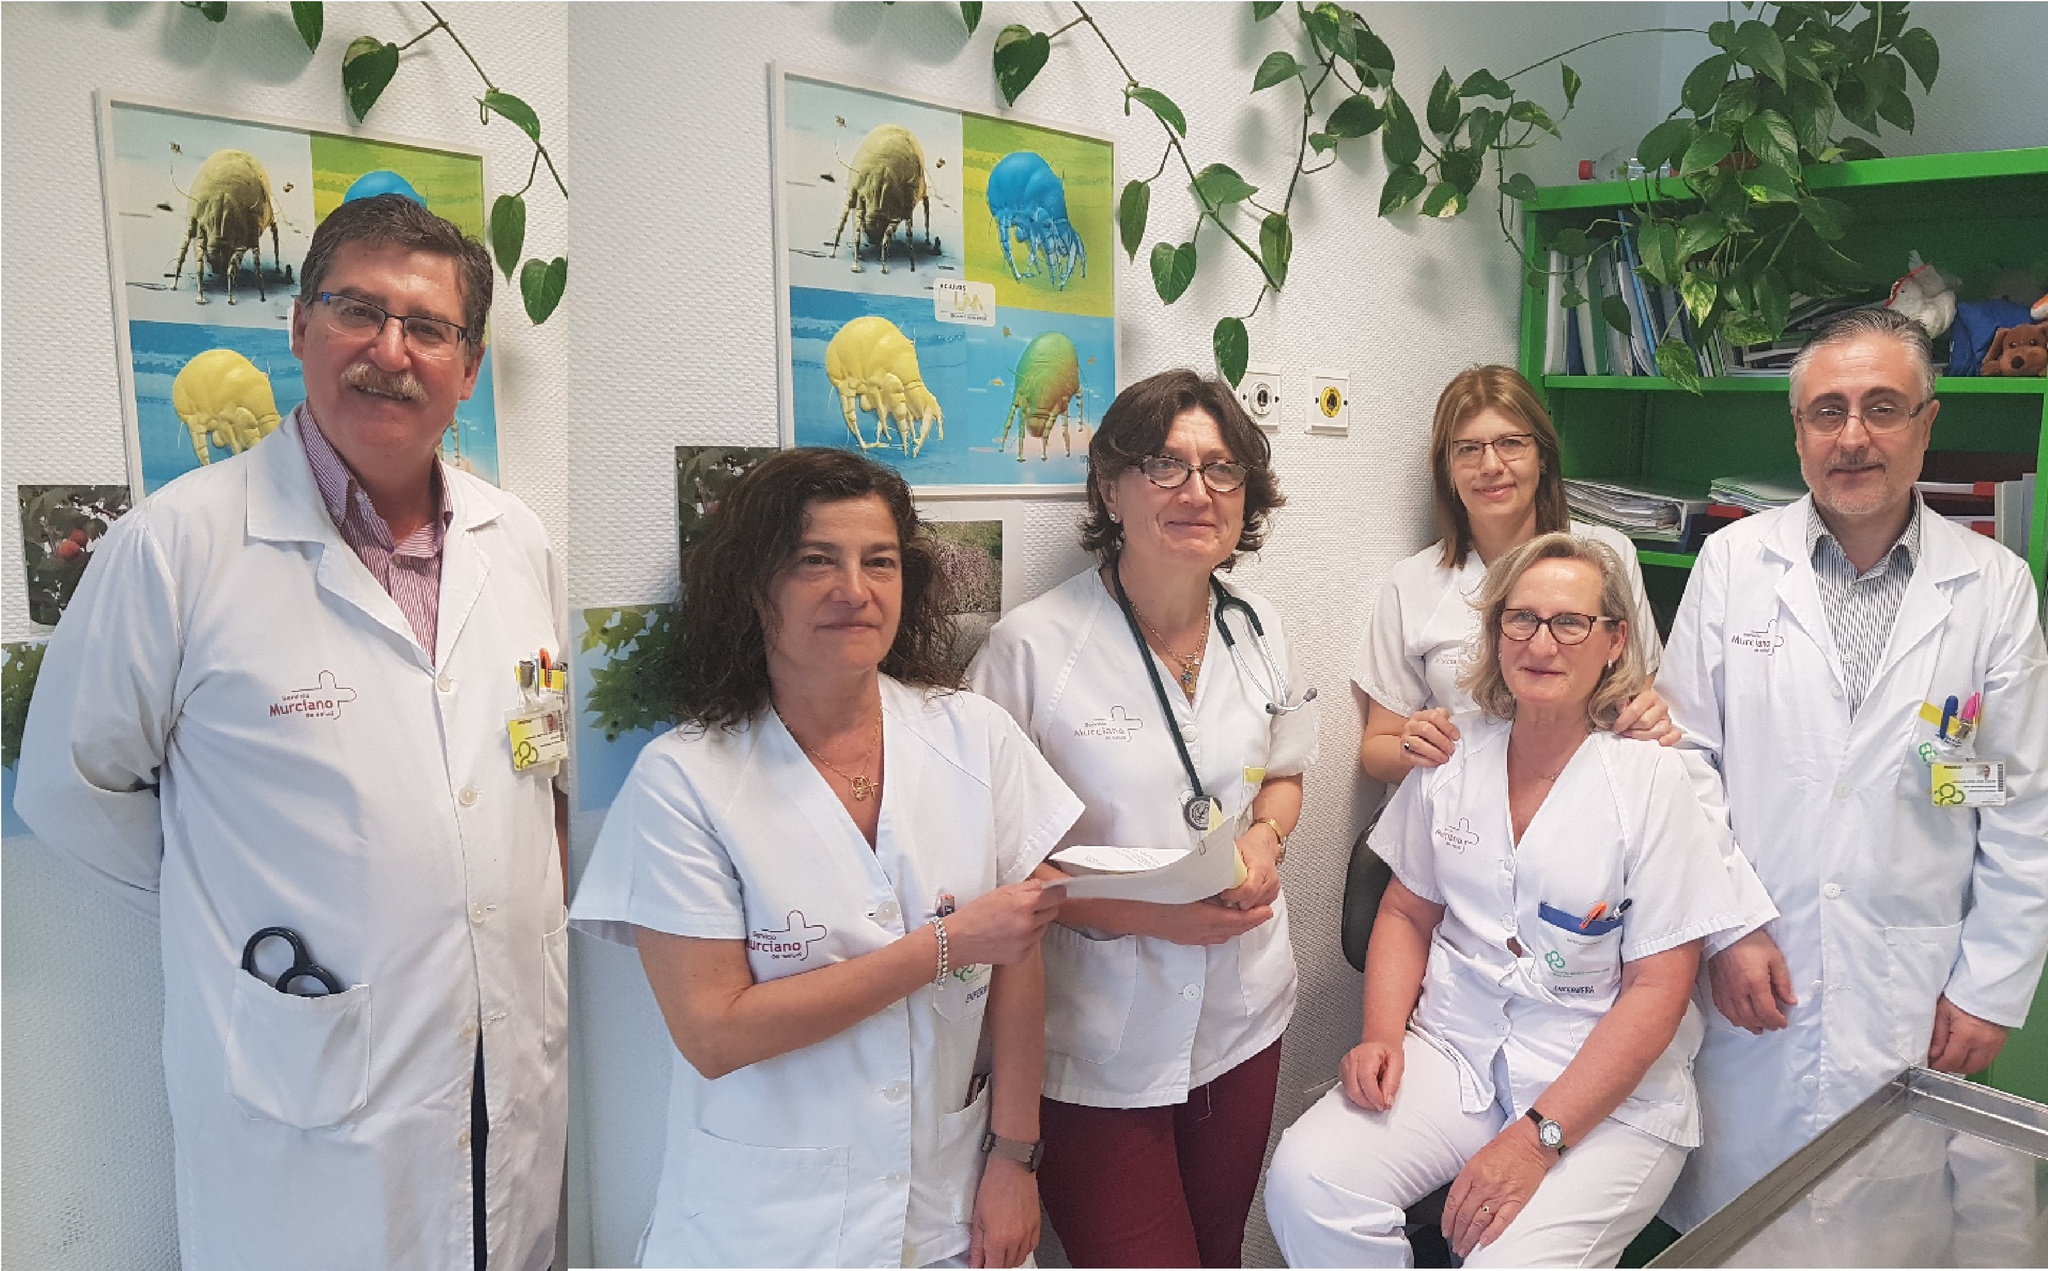 La unidad de asma grave de la sección de Alergología del Hospital General Universitario Reina Sofía de Murcia obtiene la acreditación de excelencia y de unidad de formación